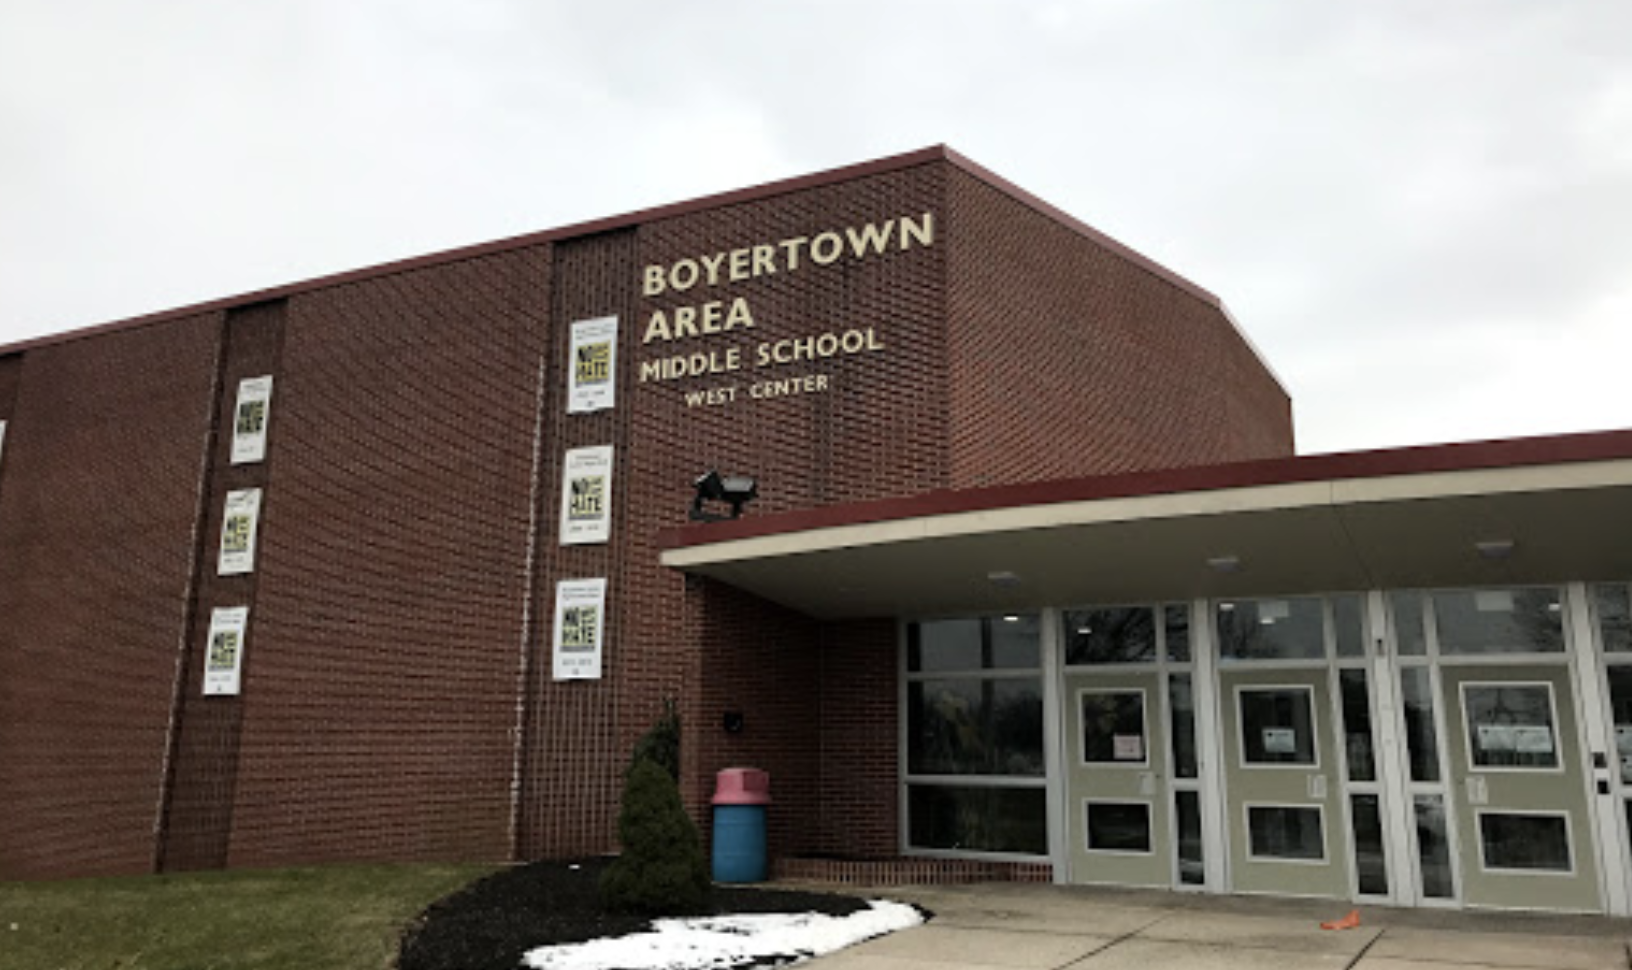 Boyertown Middle School West